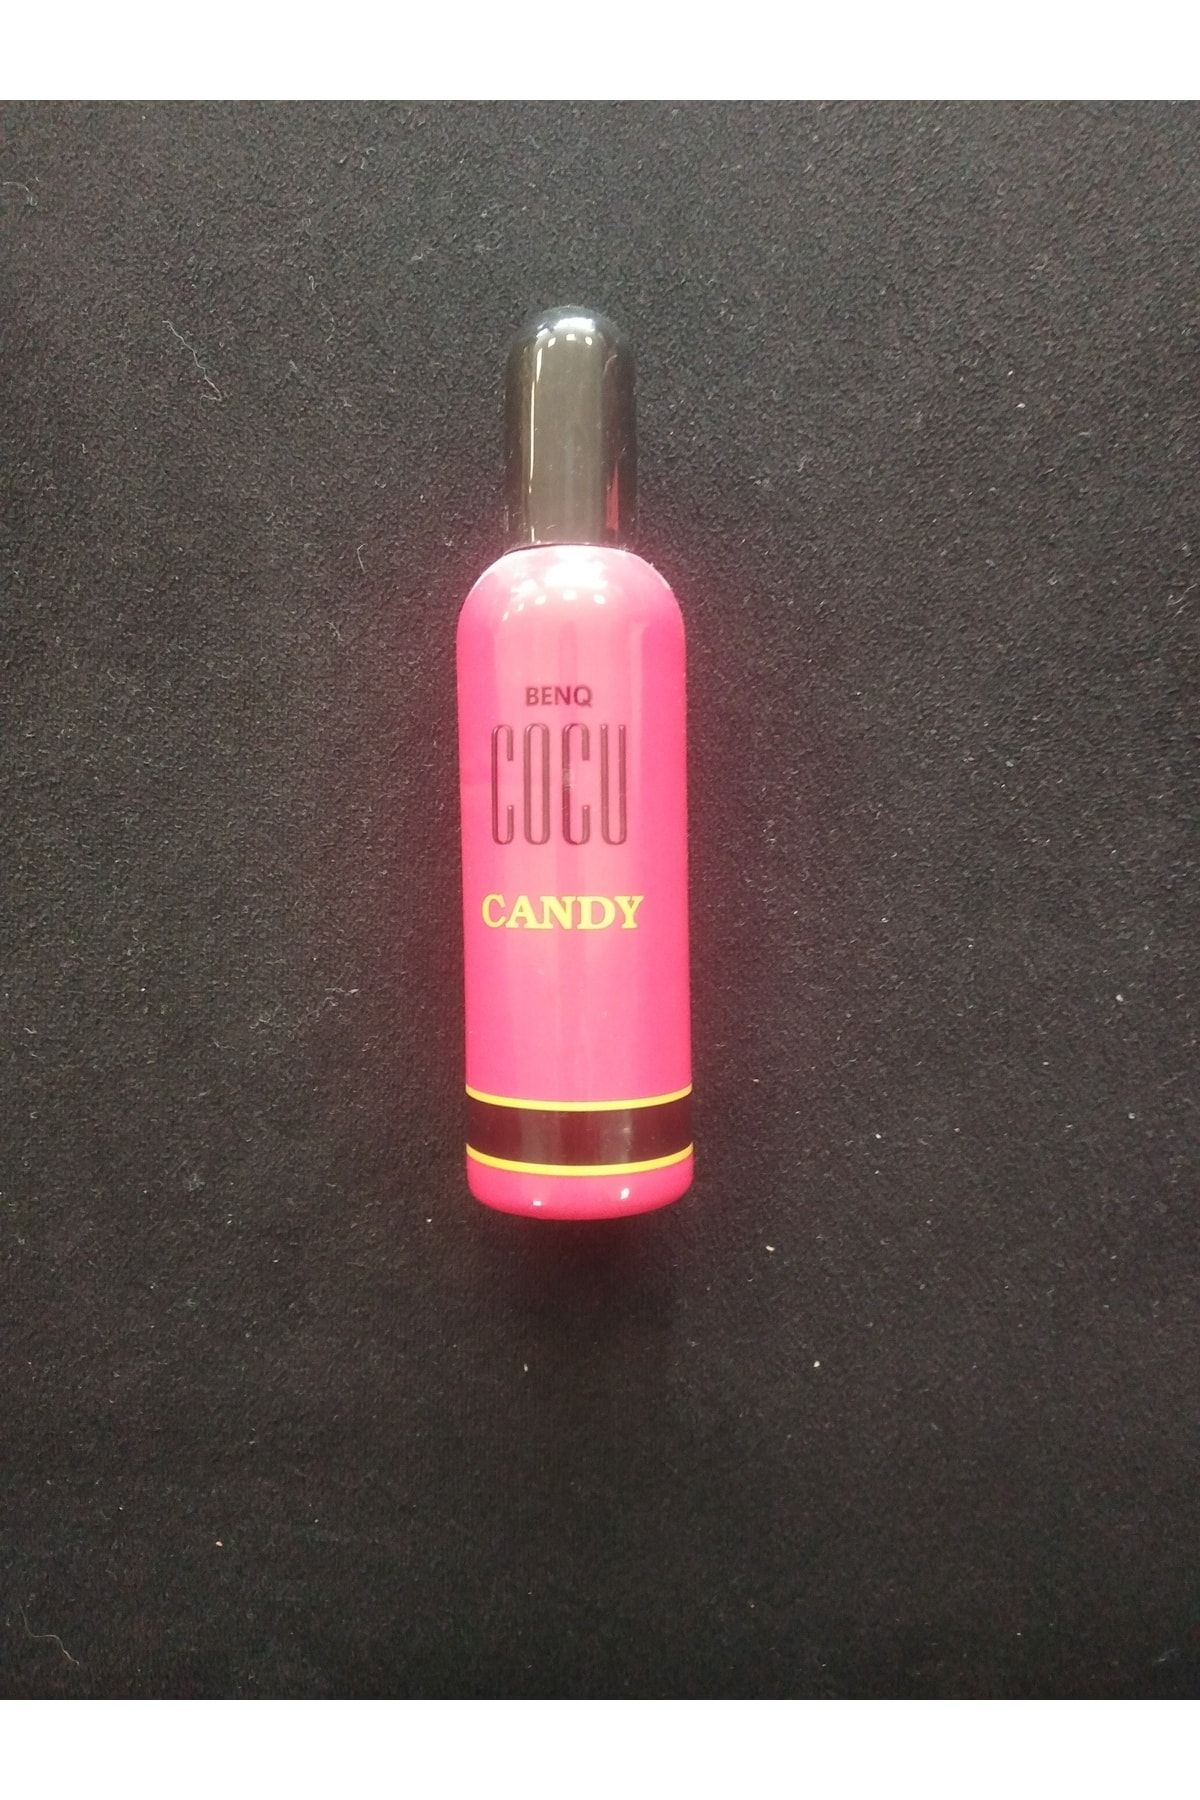 BENQ Cocu Candy Kadın Parfümü